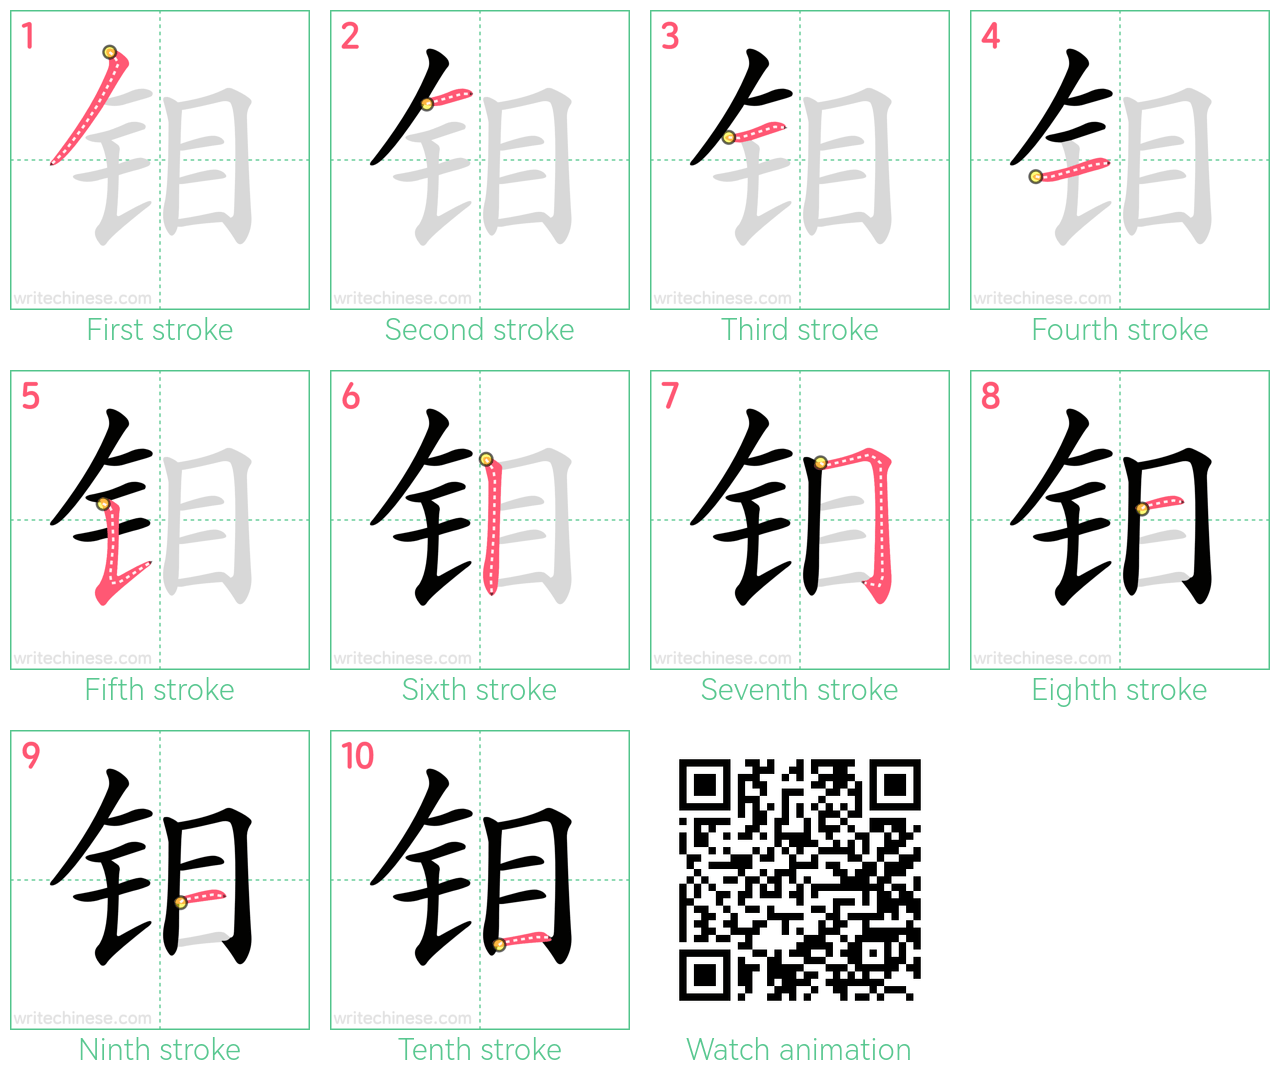 钼 step-by-step stroke order diagrams